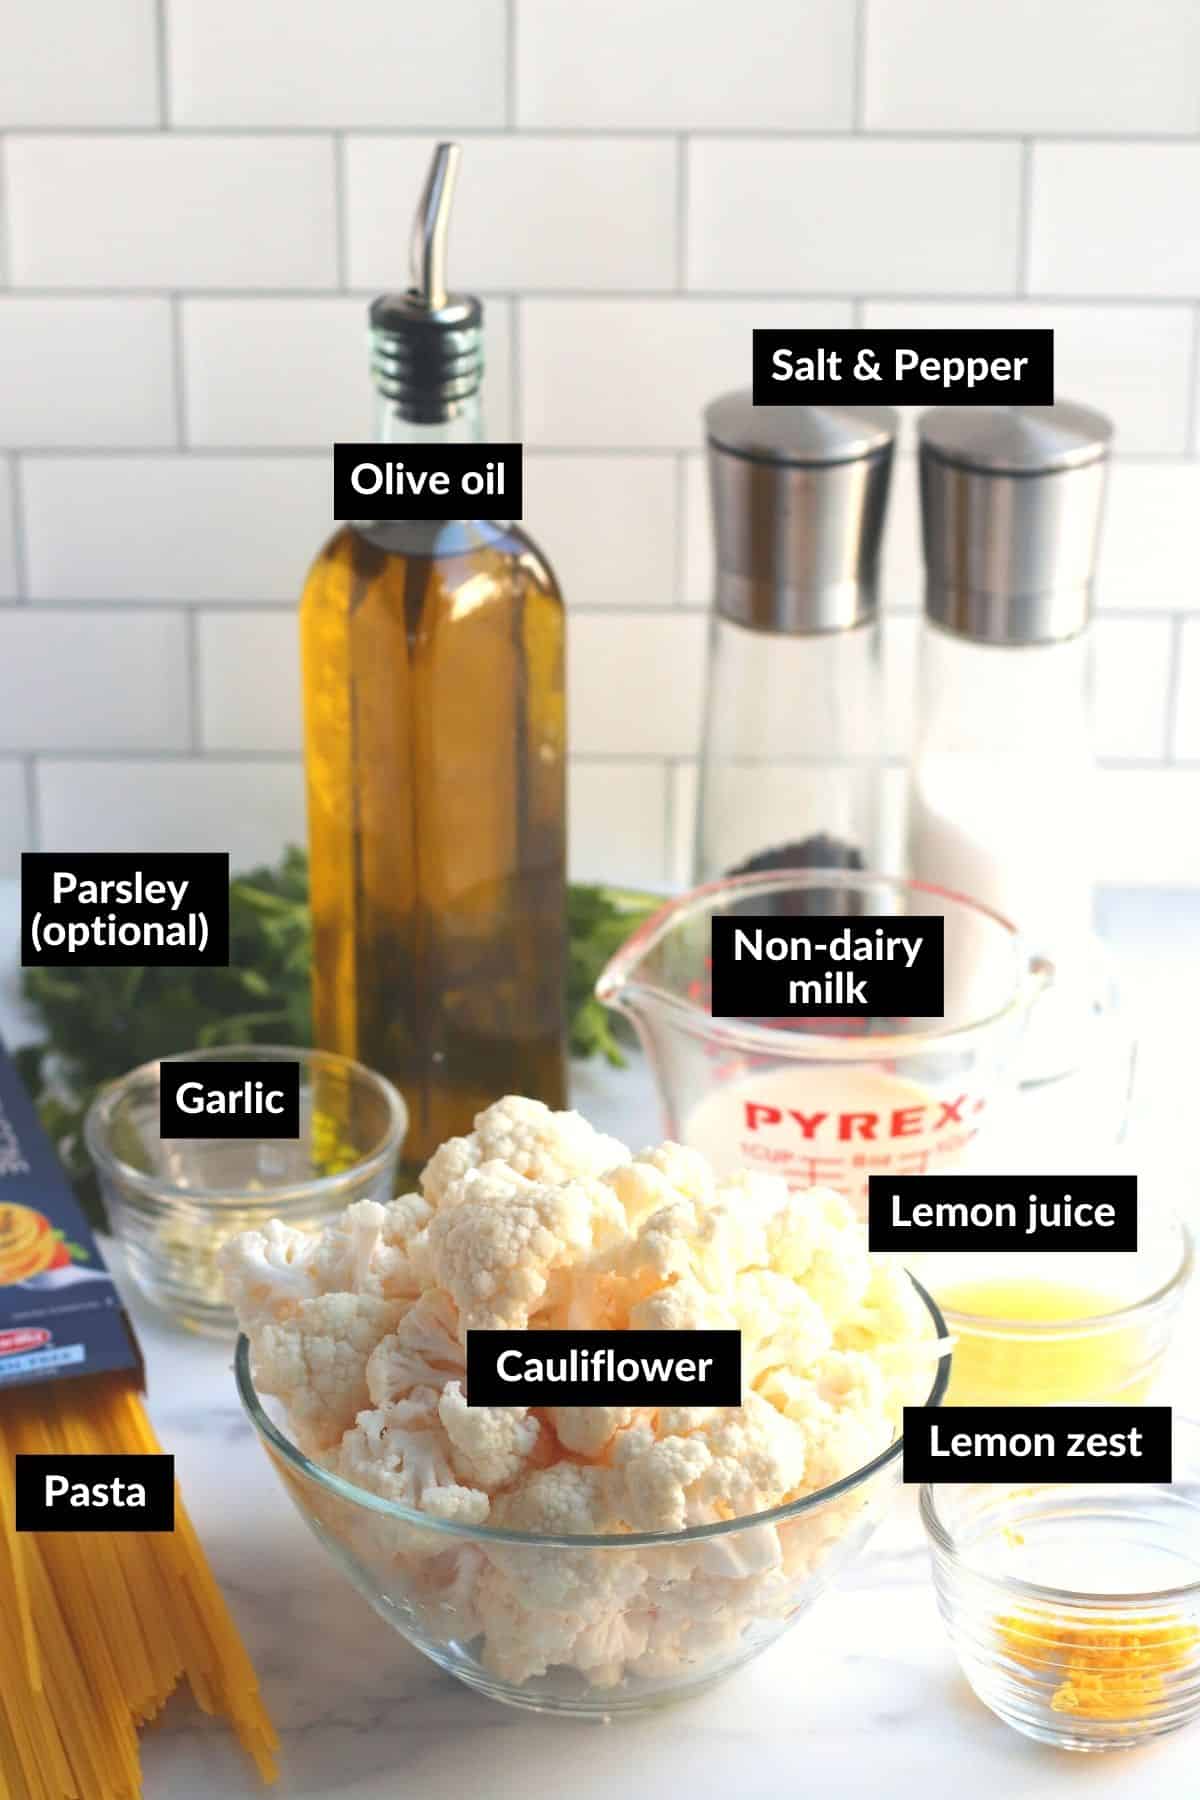 Ingredientes necesarios para hacer esta receta.